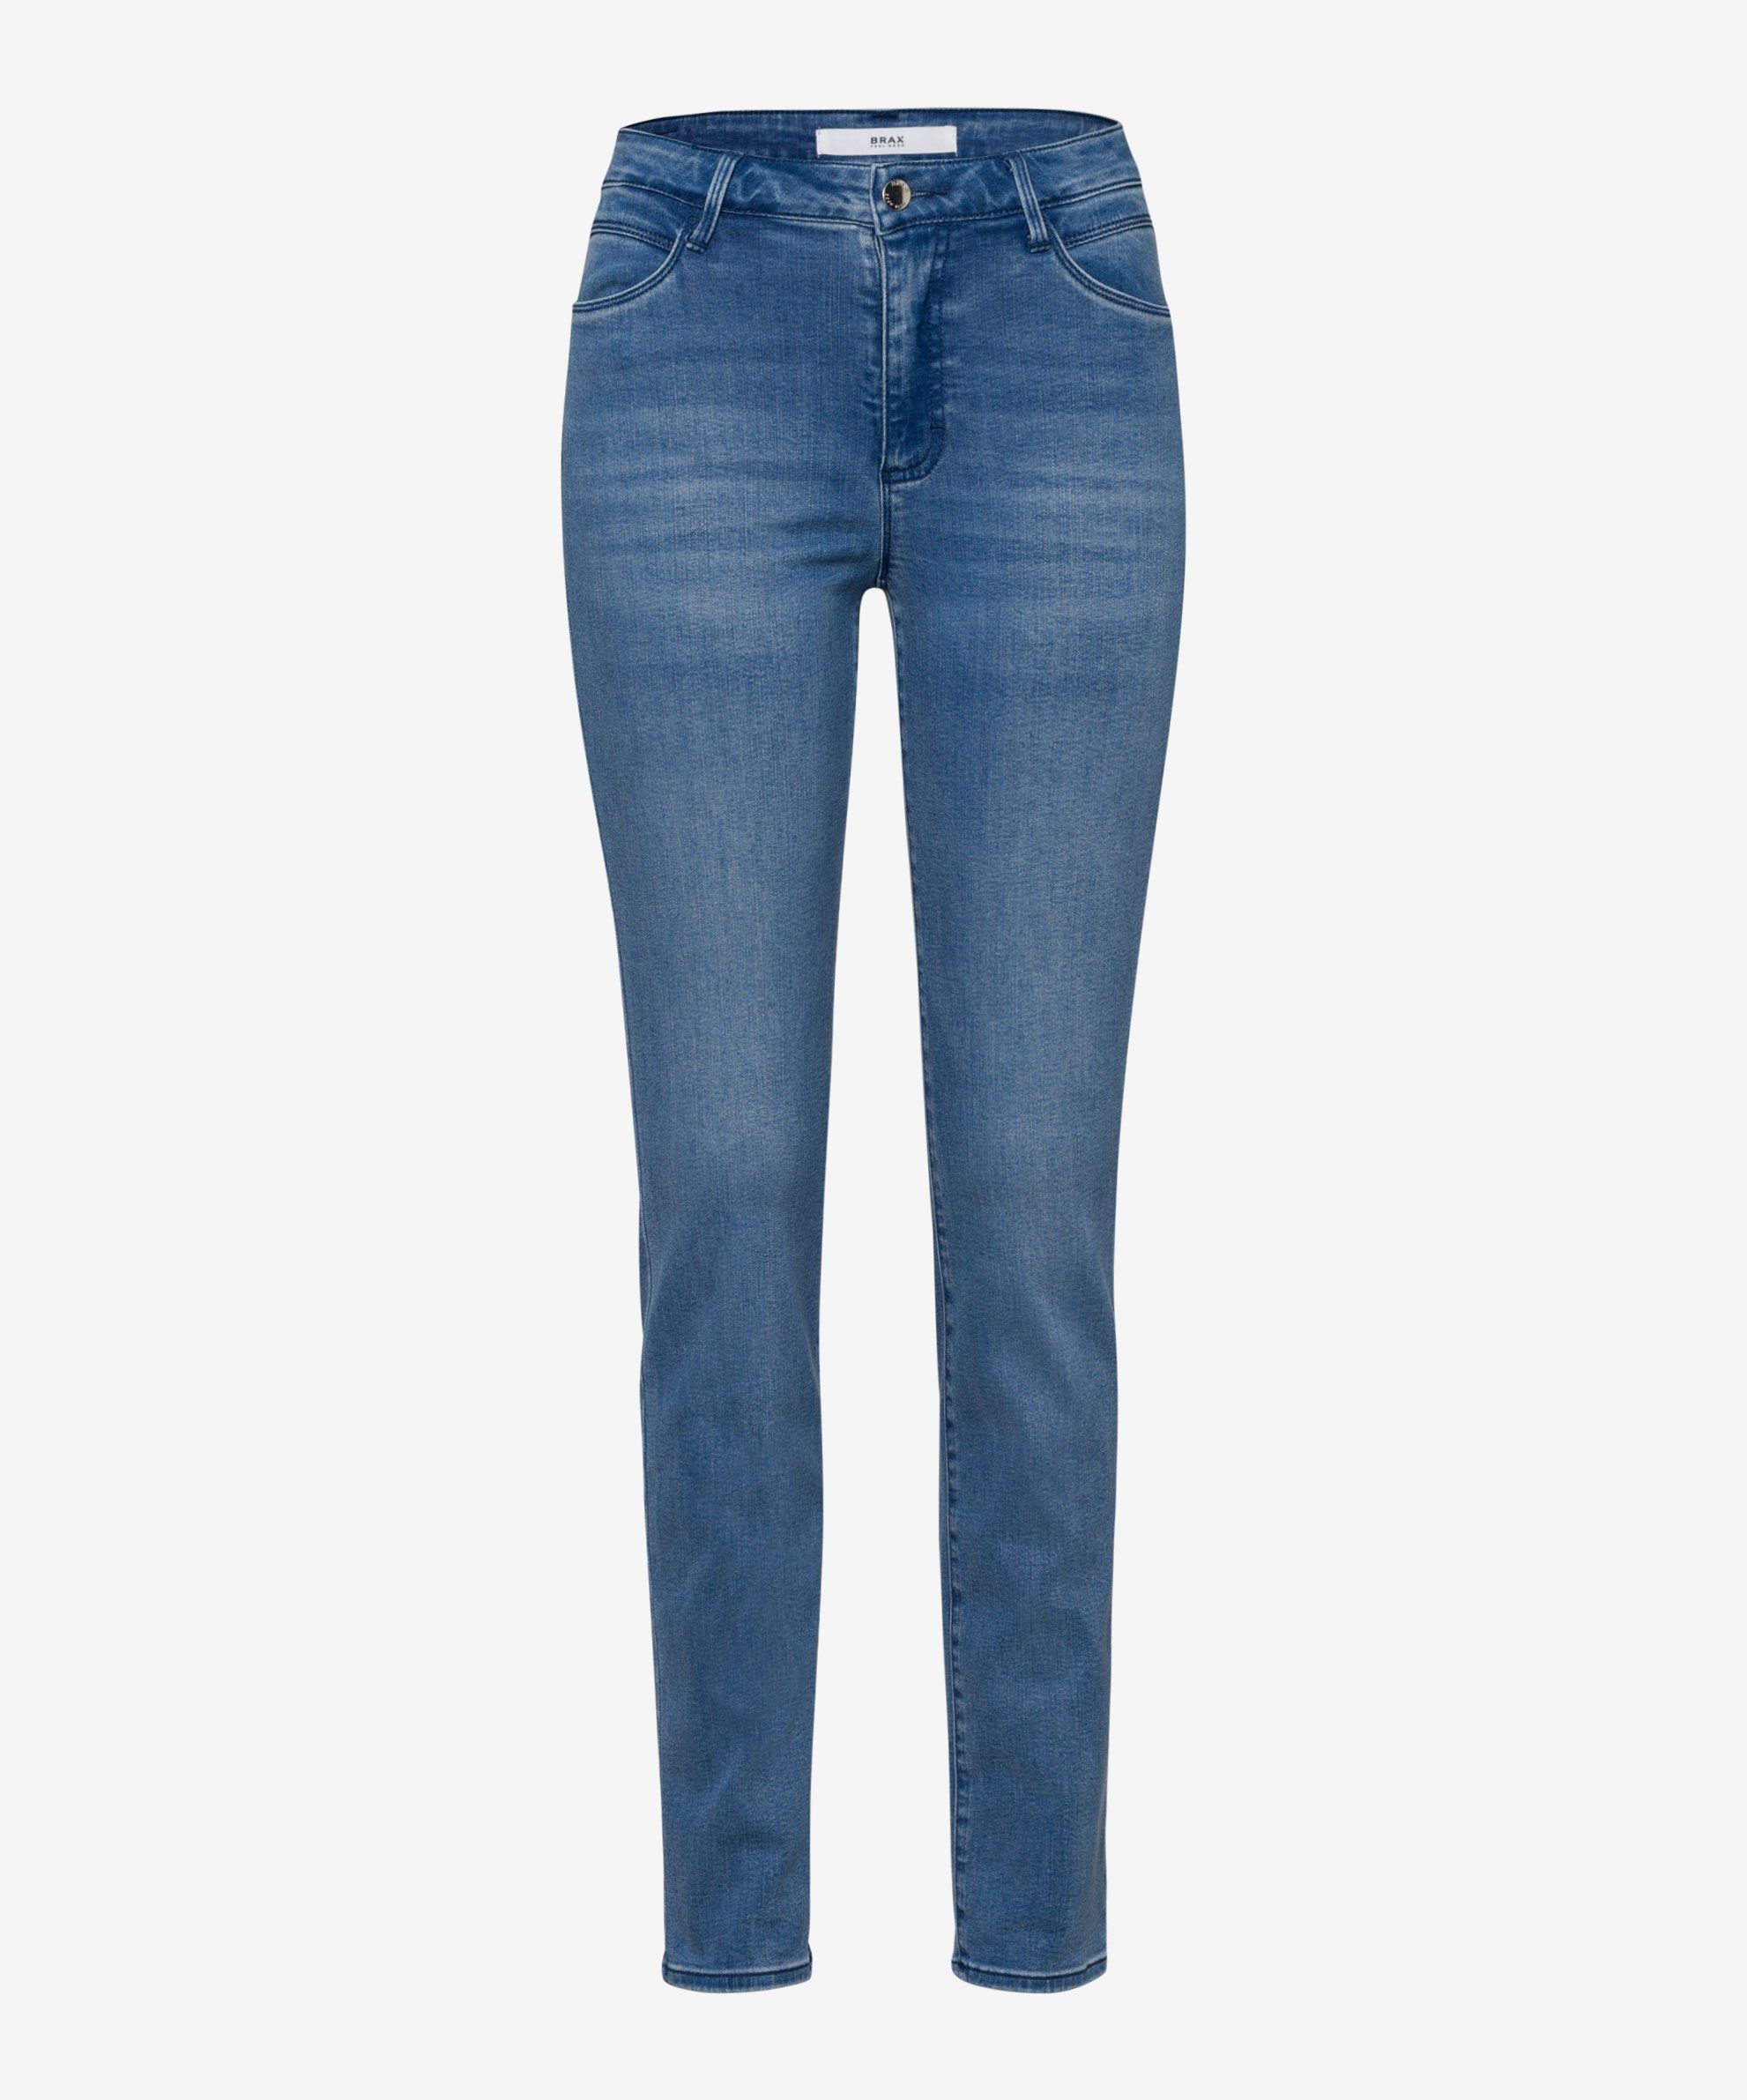 Brax Skinny-fit-Jeans Five-Pocket-Röhrenjeans used light blue